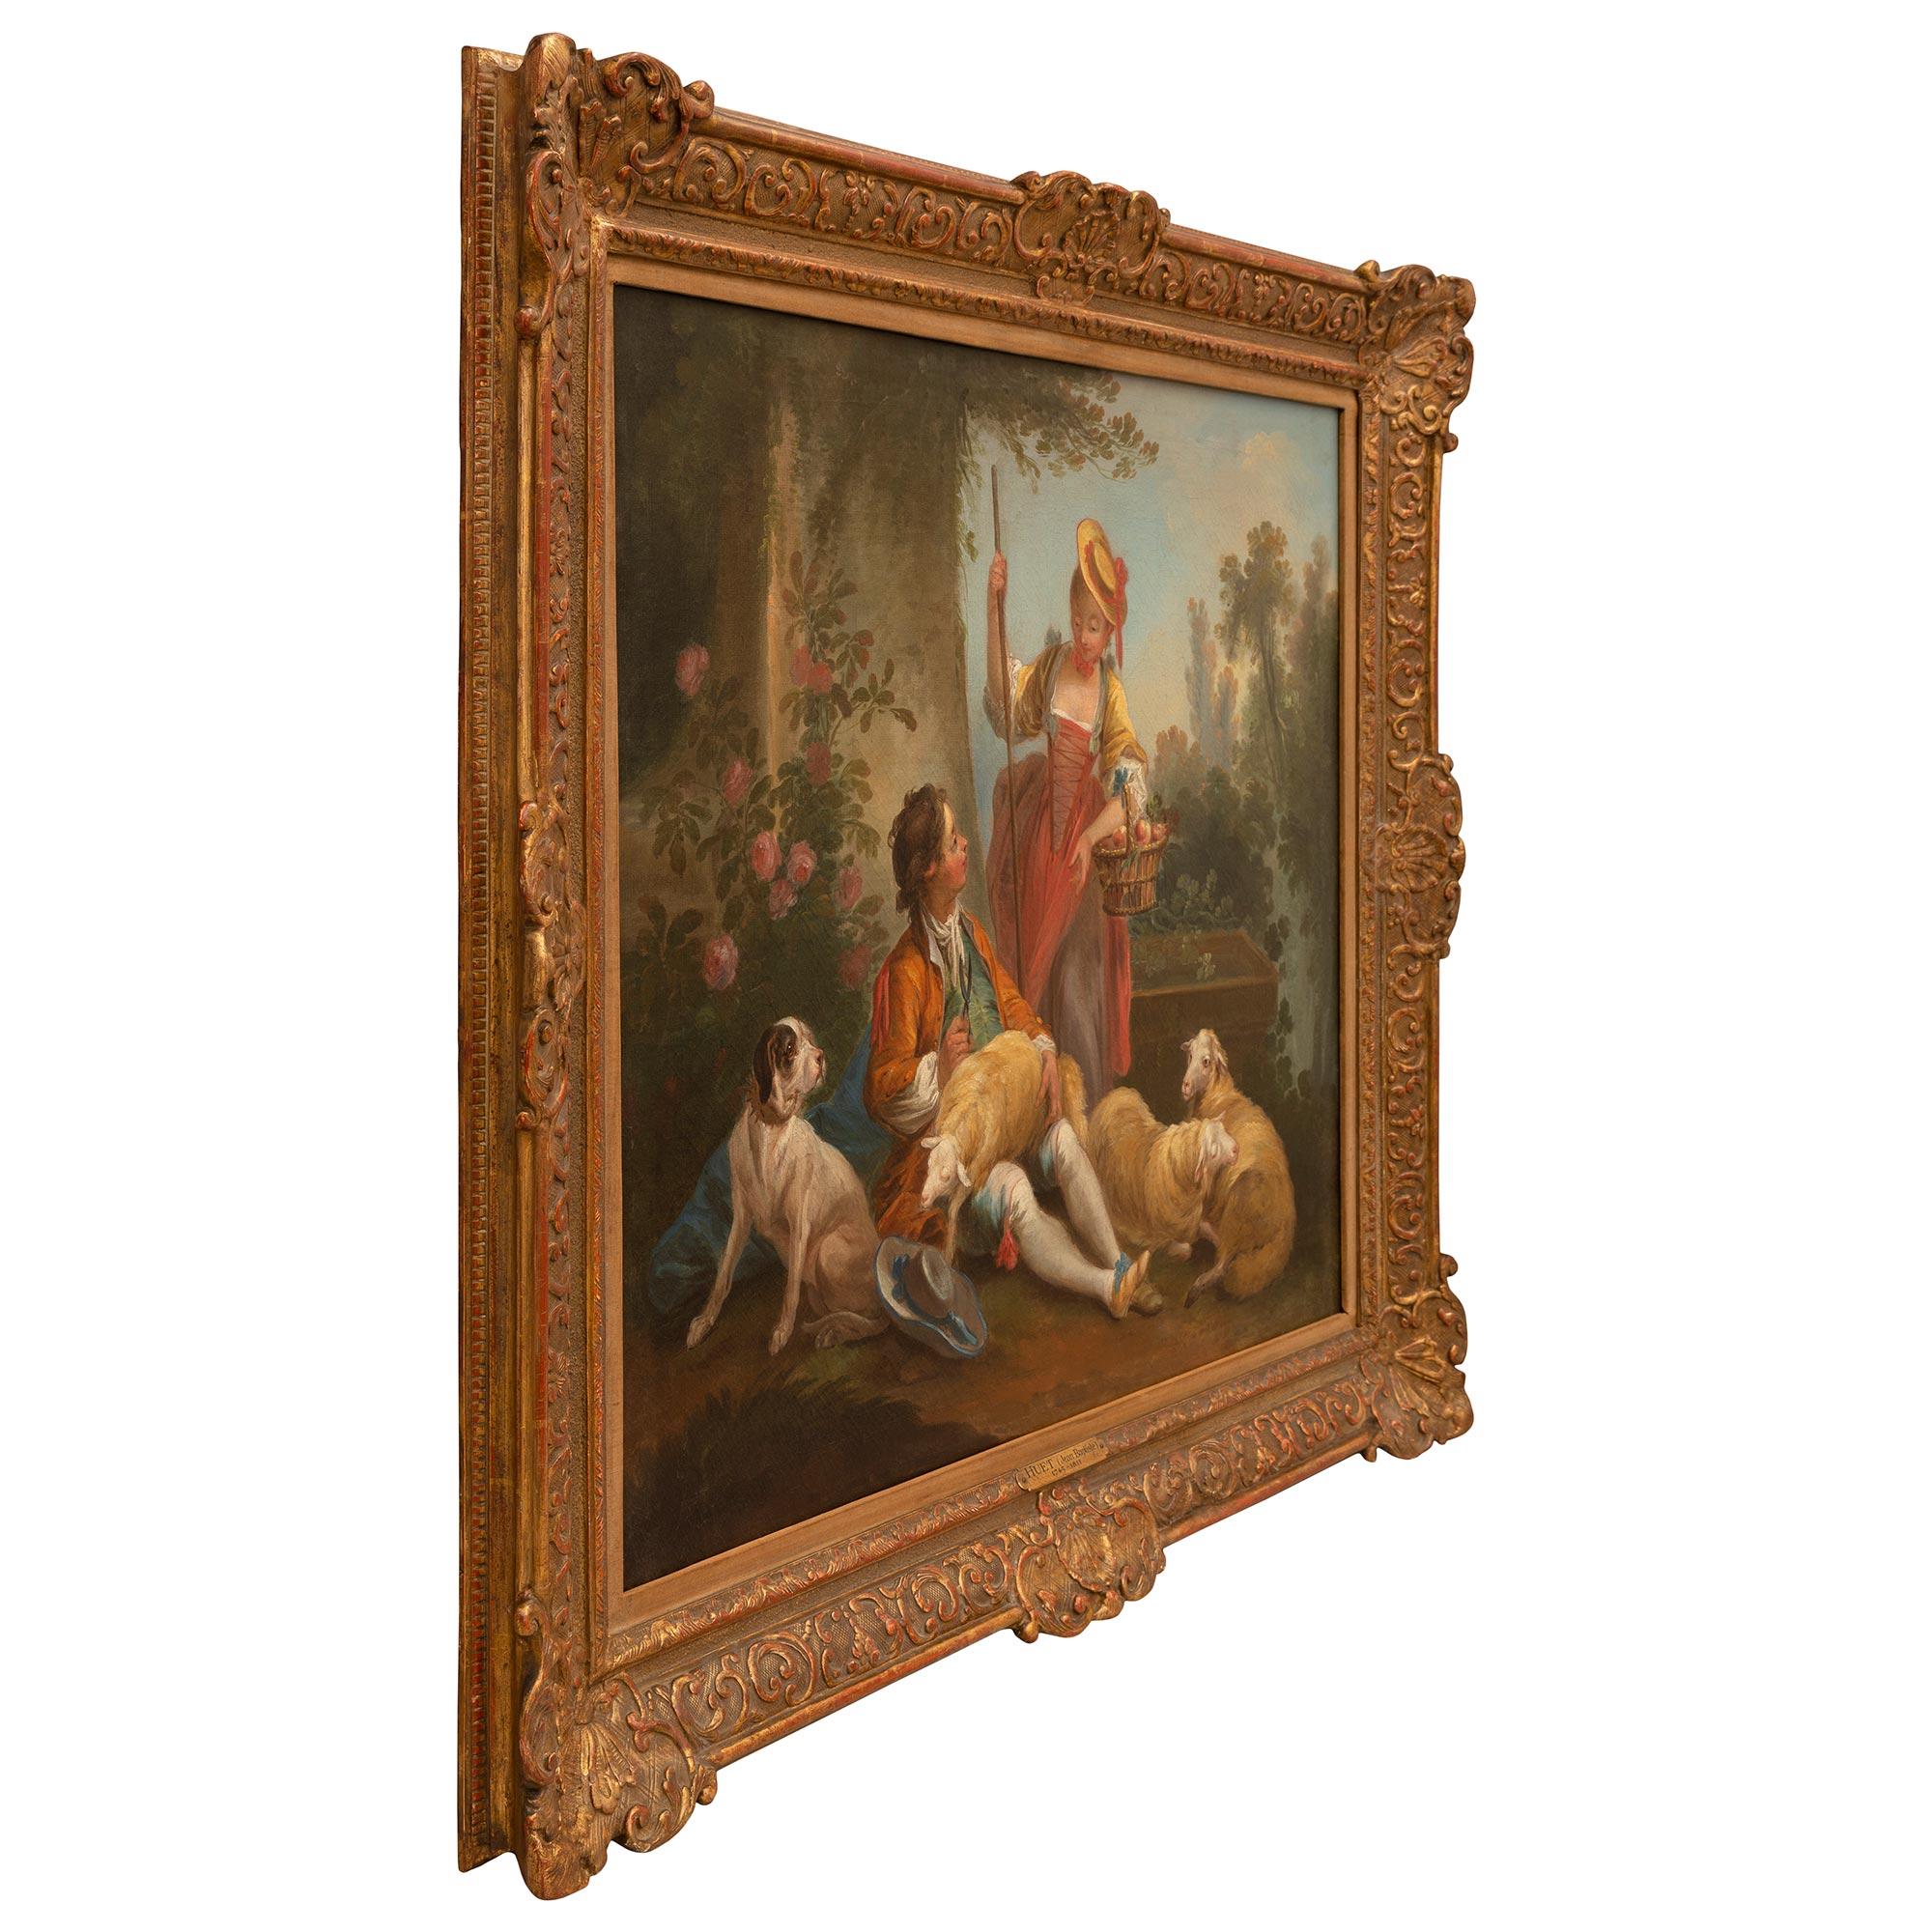 Une paire étonnante de peintures à l'huile sur toile du 19ème siècle attribuées à Jean-Baptiste Huet. Chaque tableau est présenté dans son cadre d'origine en bois doré au motif finement tacheté et richement sculpté de motifs feuillus, de coquillages